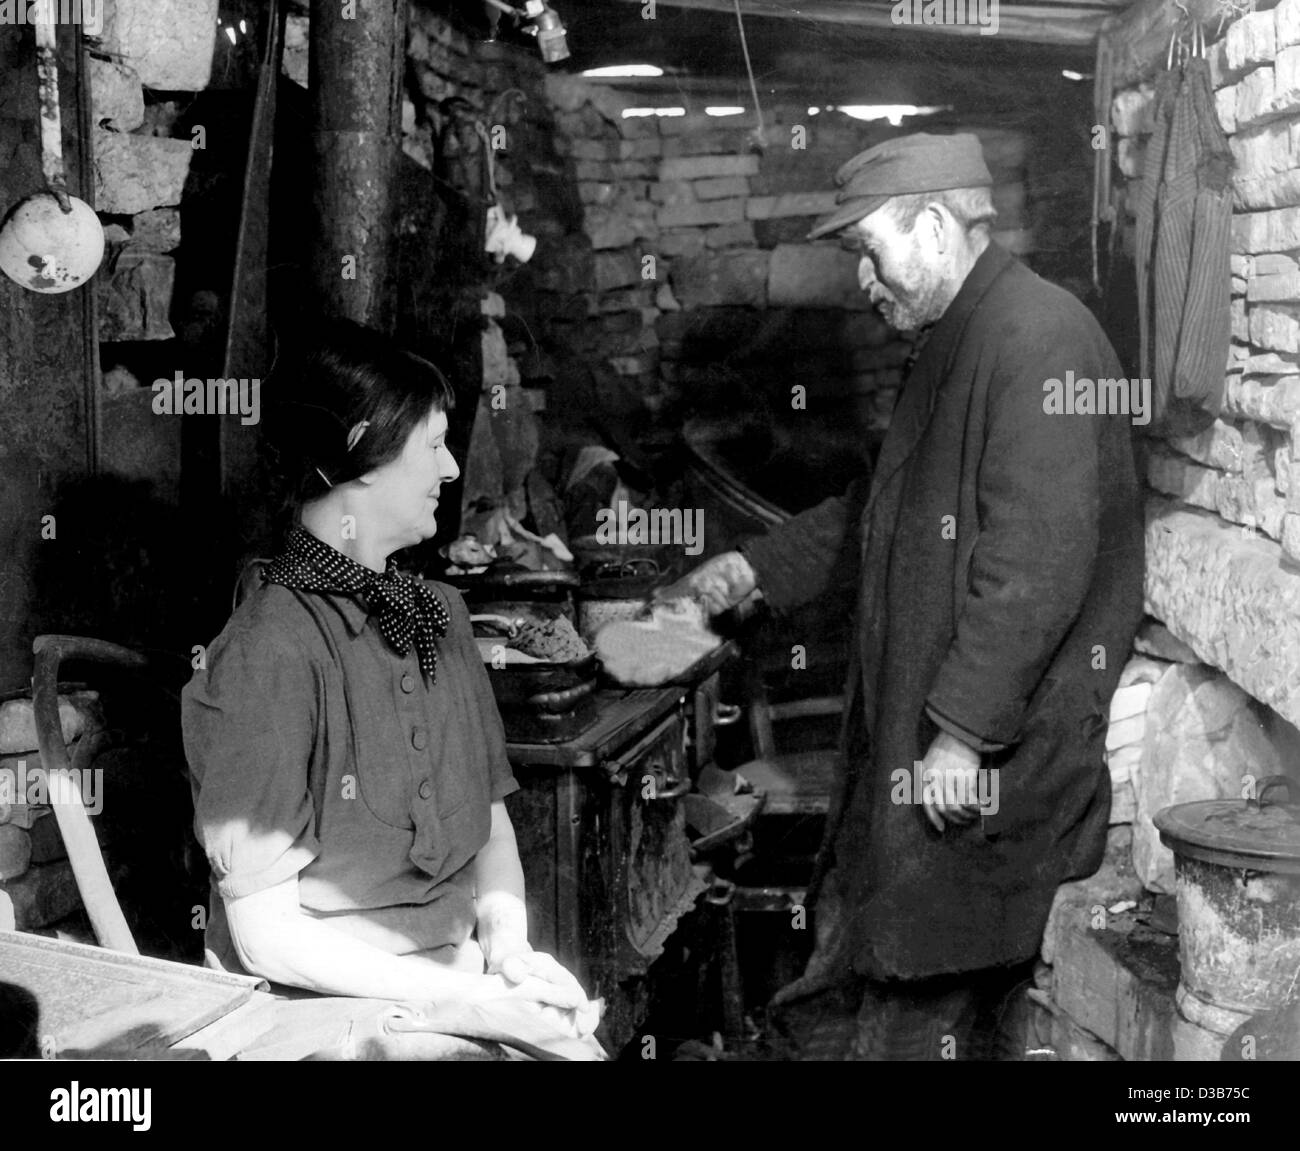 (Dpa-Dateien) - zwei Bewohner einer spärlich gemauerte Hütte bereiten Sie eine Mahlzeit in Westdeutschland nach dem zweiten Weltkrieg Frankfurt 1946. Stockfoto